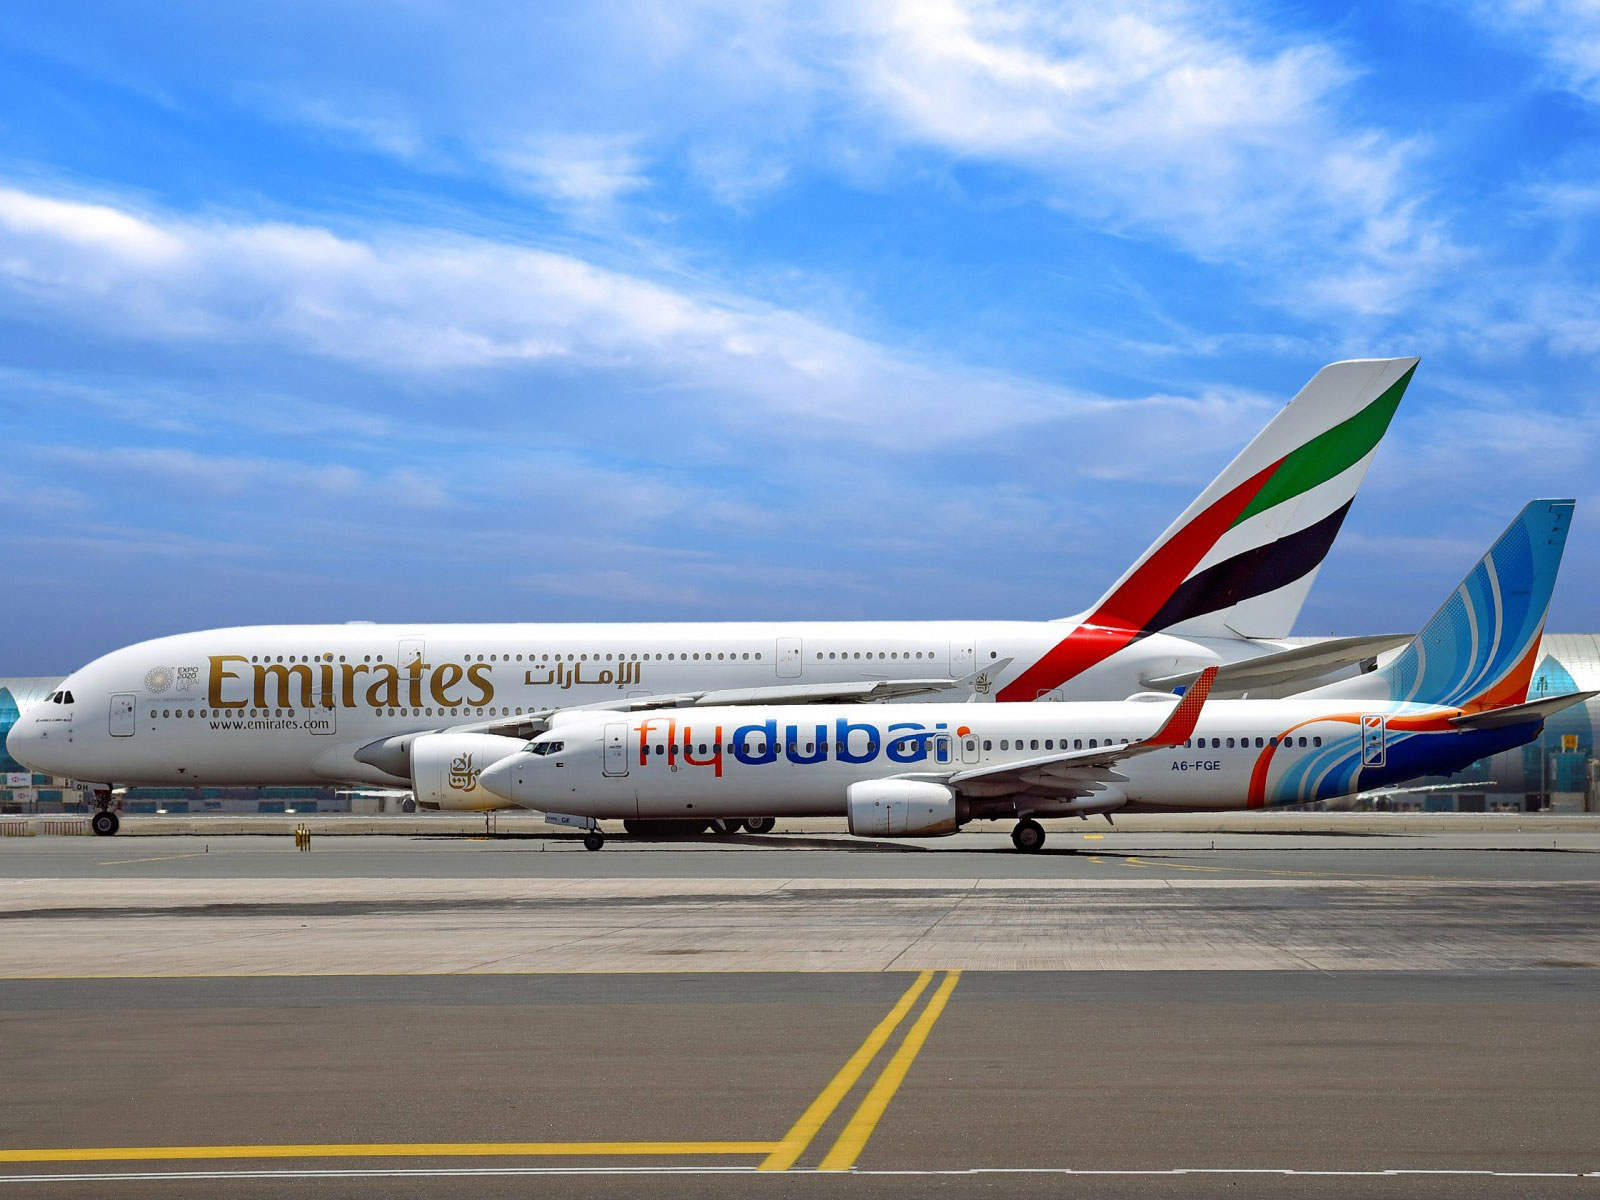 Emirates : Australie, Christchurch et 1 millions de miles 41 Air Journal